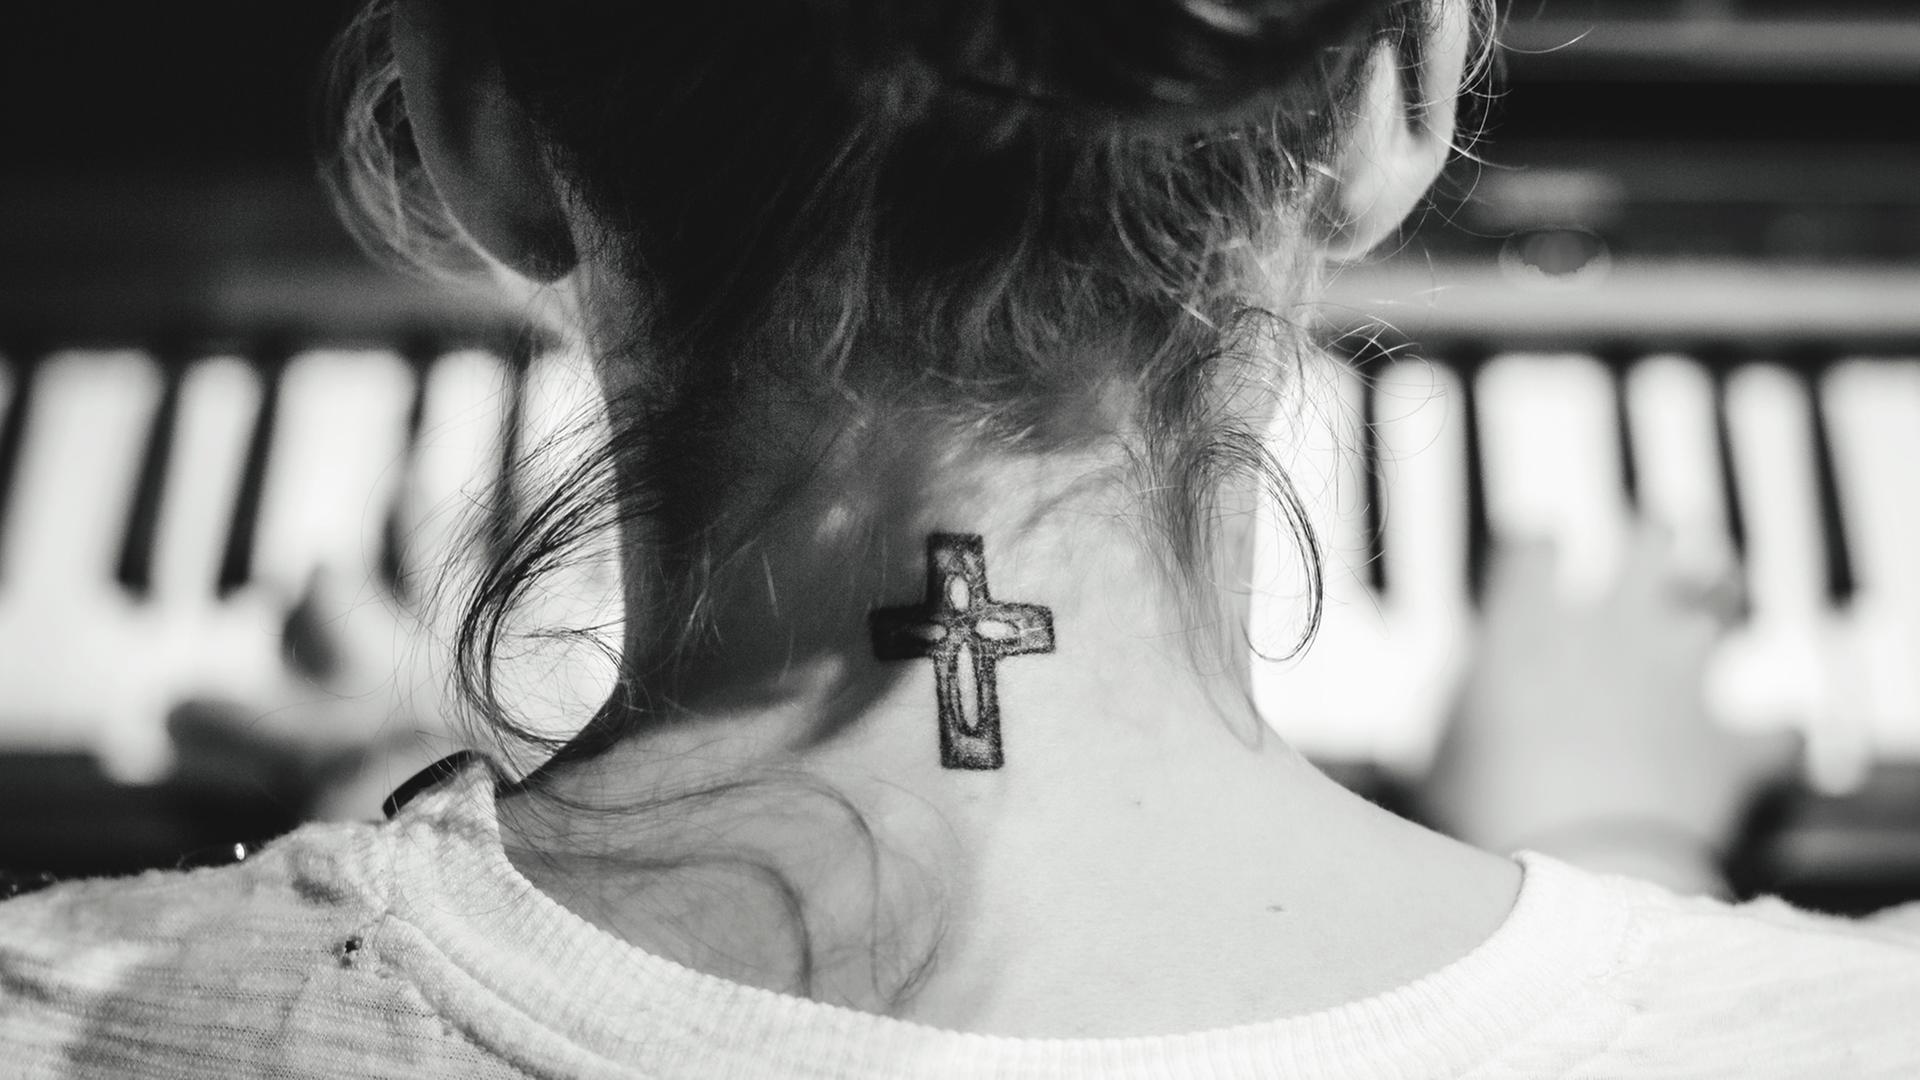 Eine junge Frau mit hochgesteckten Haaren sitzt am Klavier und spielt: Gezeigt wird sie in der Rückenansicht, so dass an ihrem Hals das Tattoo eines christlichen Kreuzes sichtbar wird.